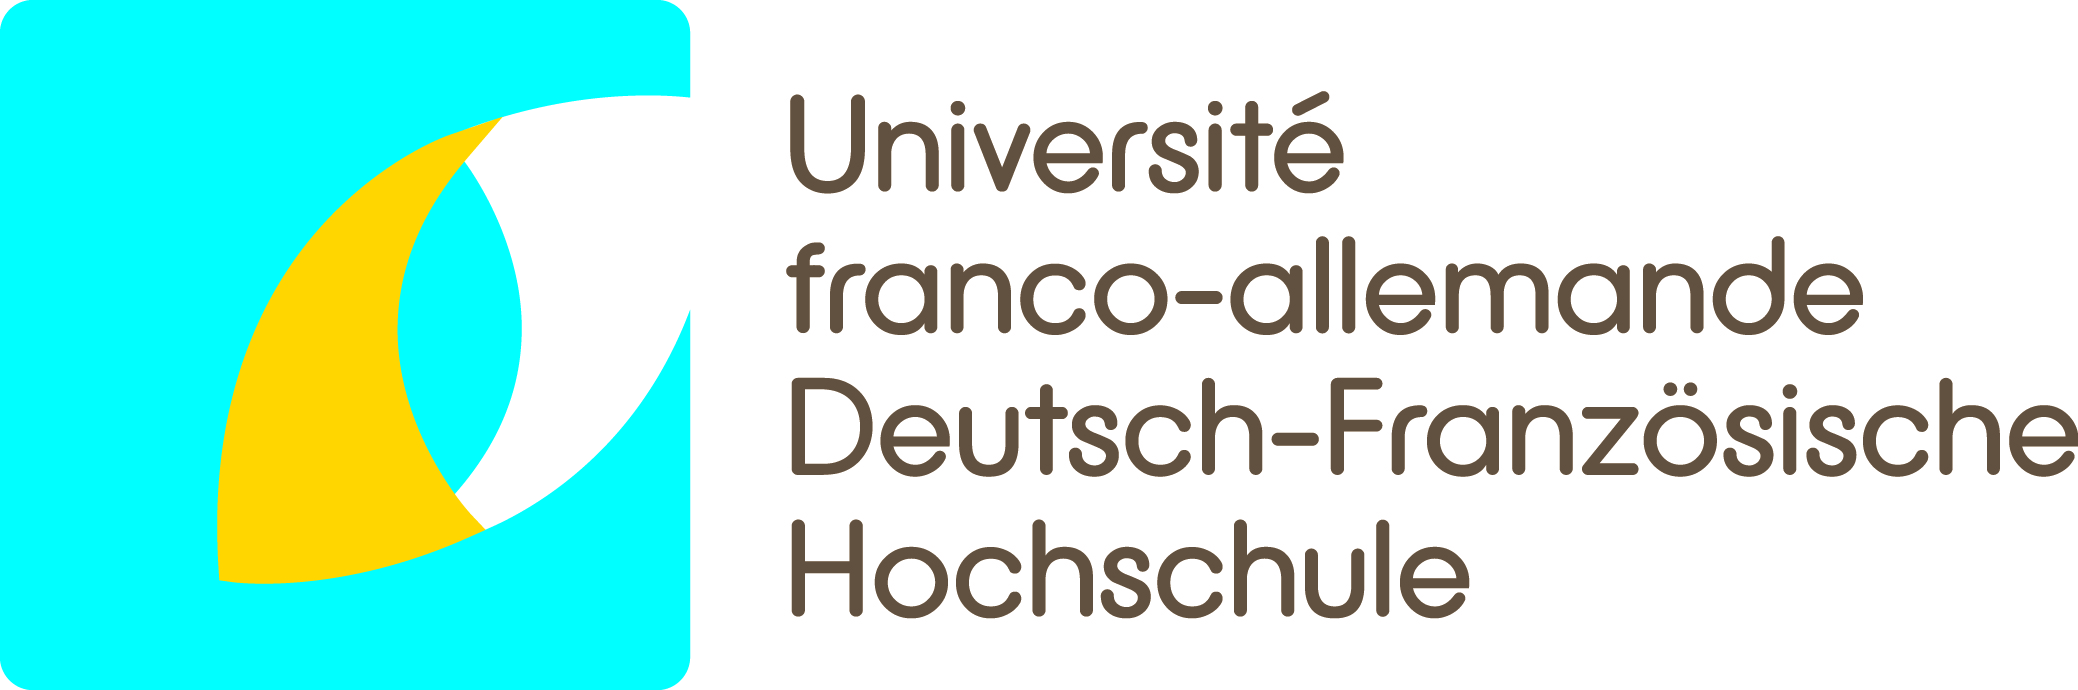 Université Franco-Allemande - Deutsch-Französische Hochschule